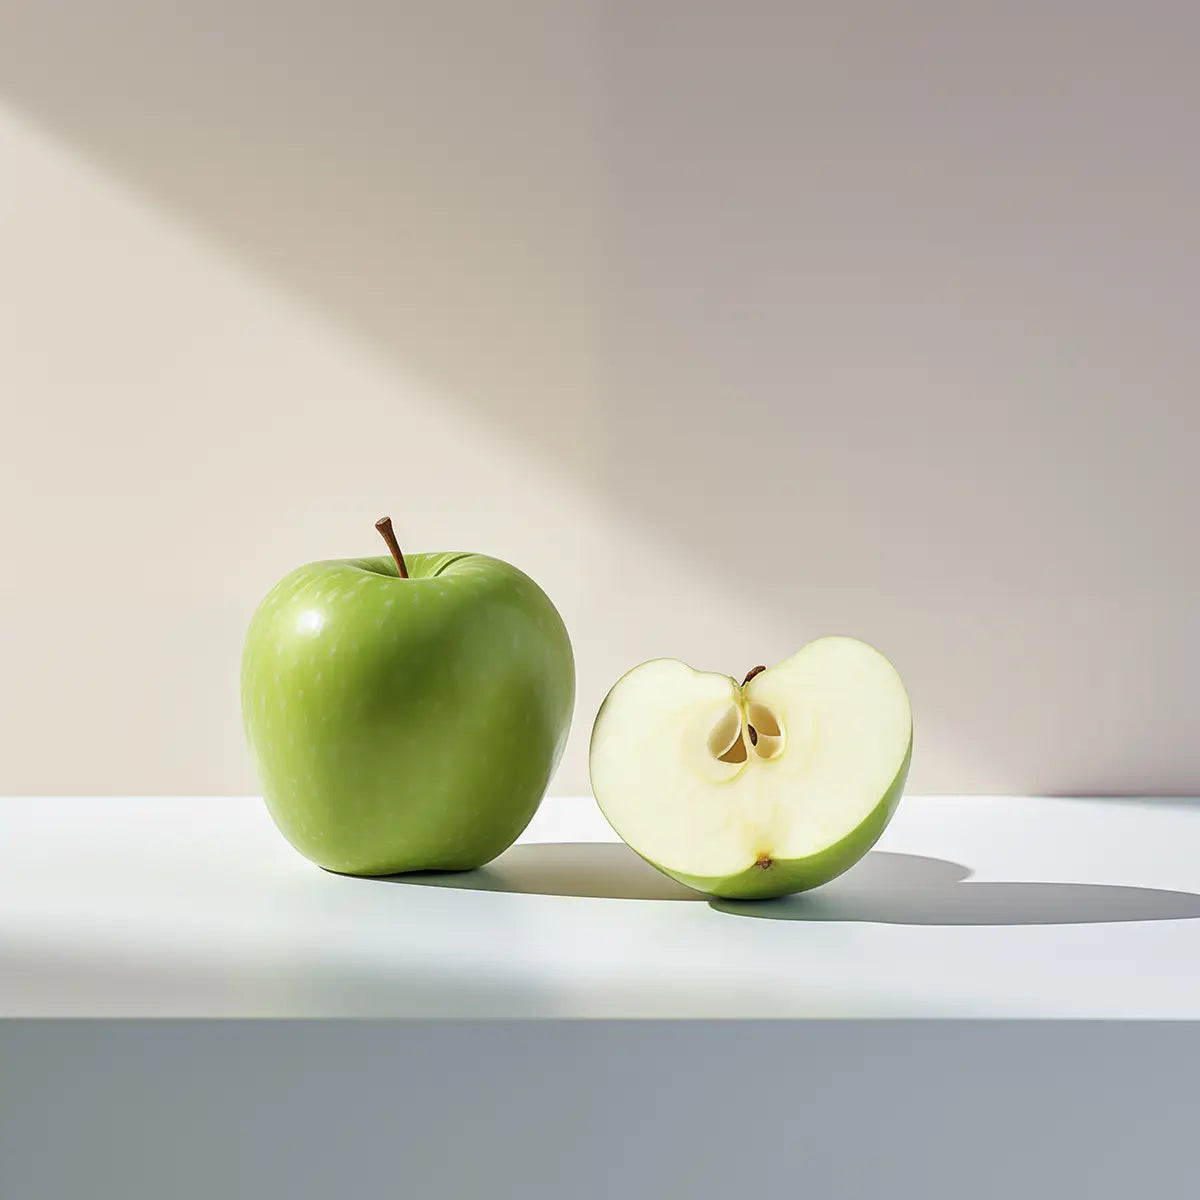 grönt äpple med en halva grönt äpple bredvid